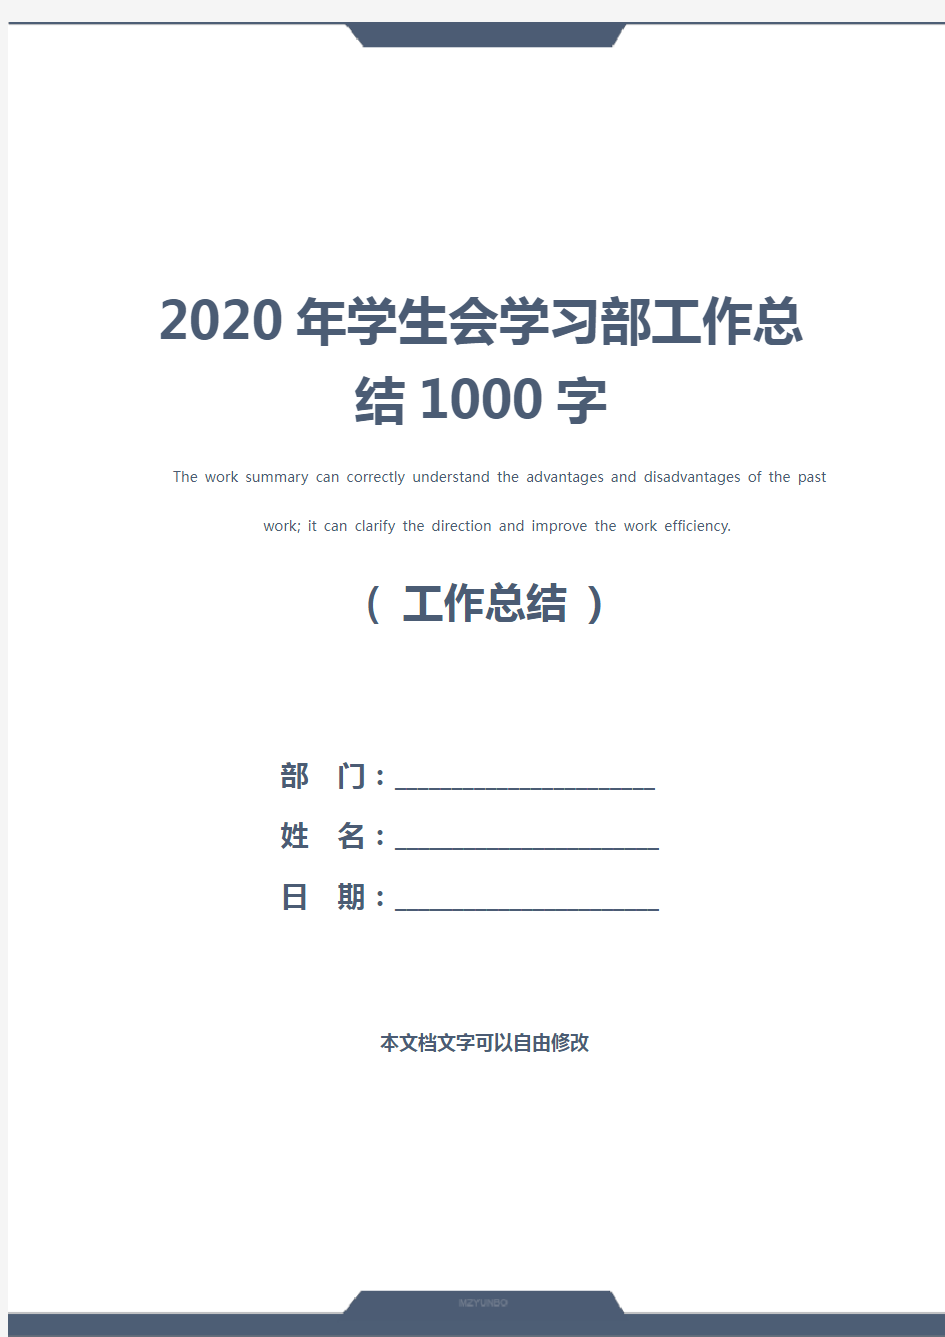 2020年学生会学习部工作总结1000字